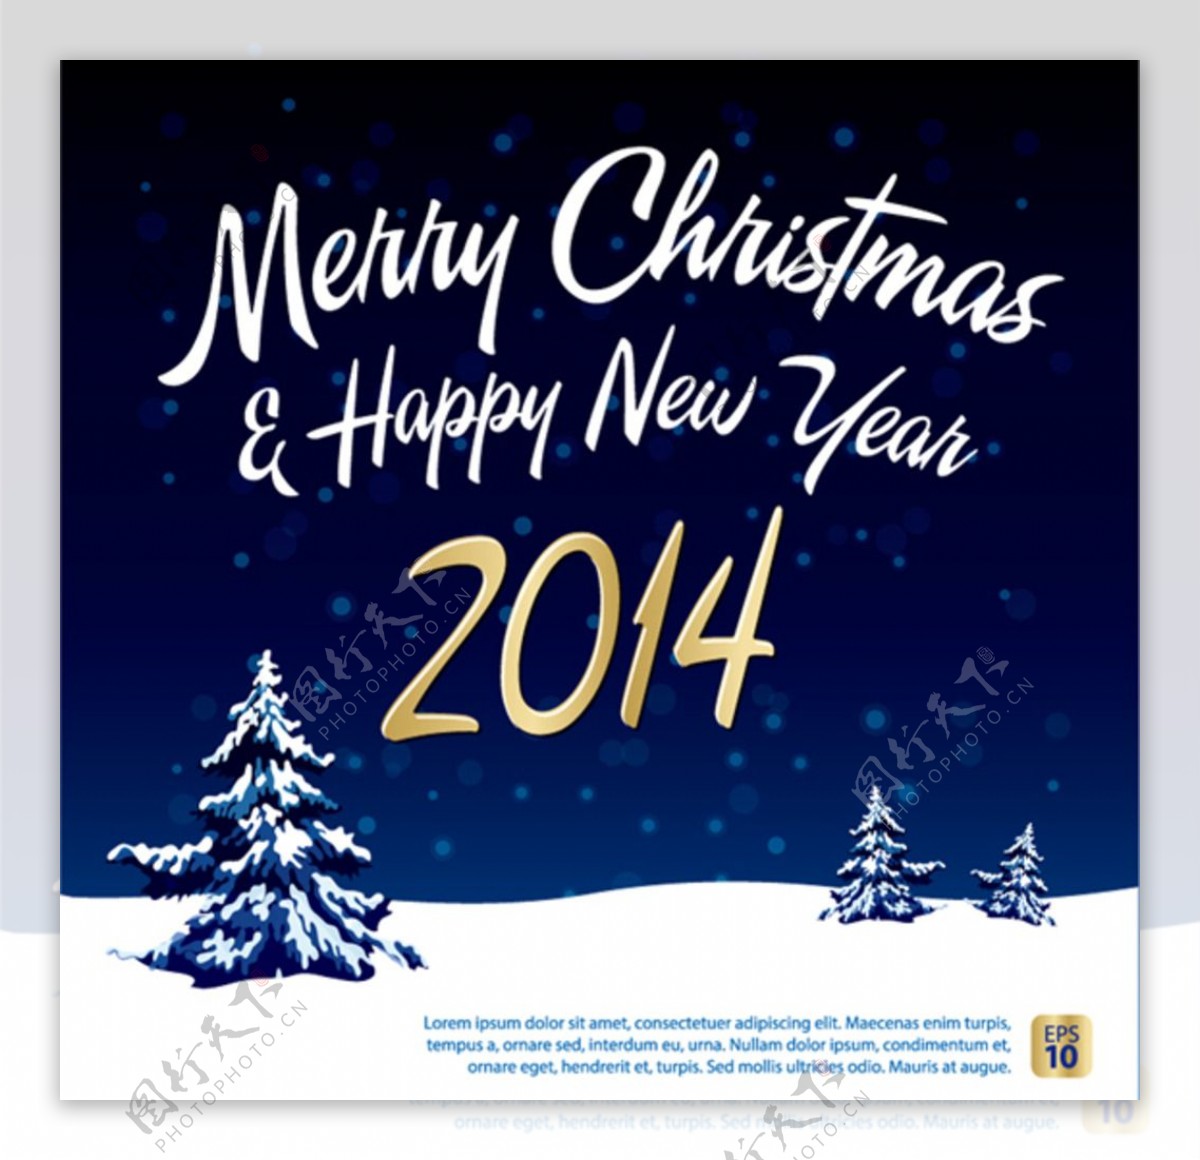 2014蓝色圣诞雪夜海报矢量素图片